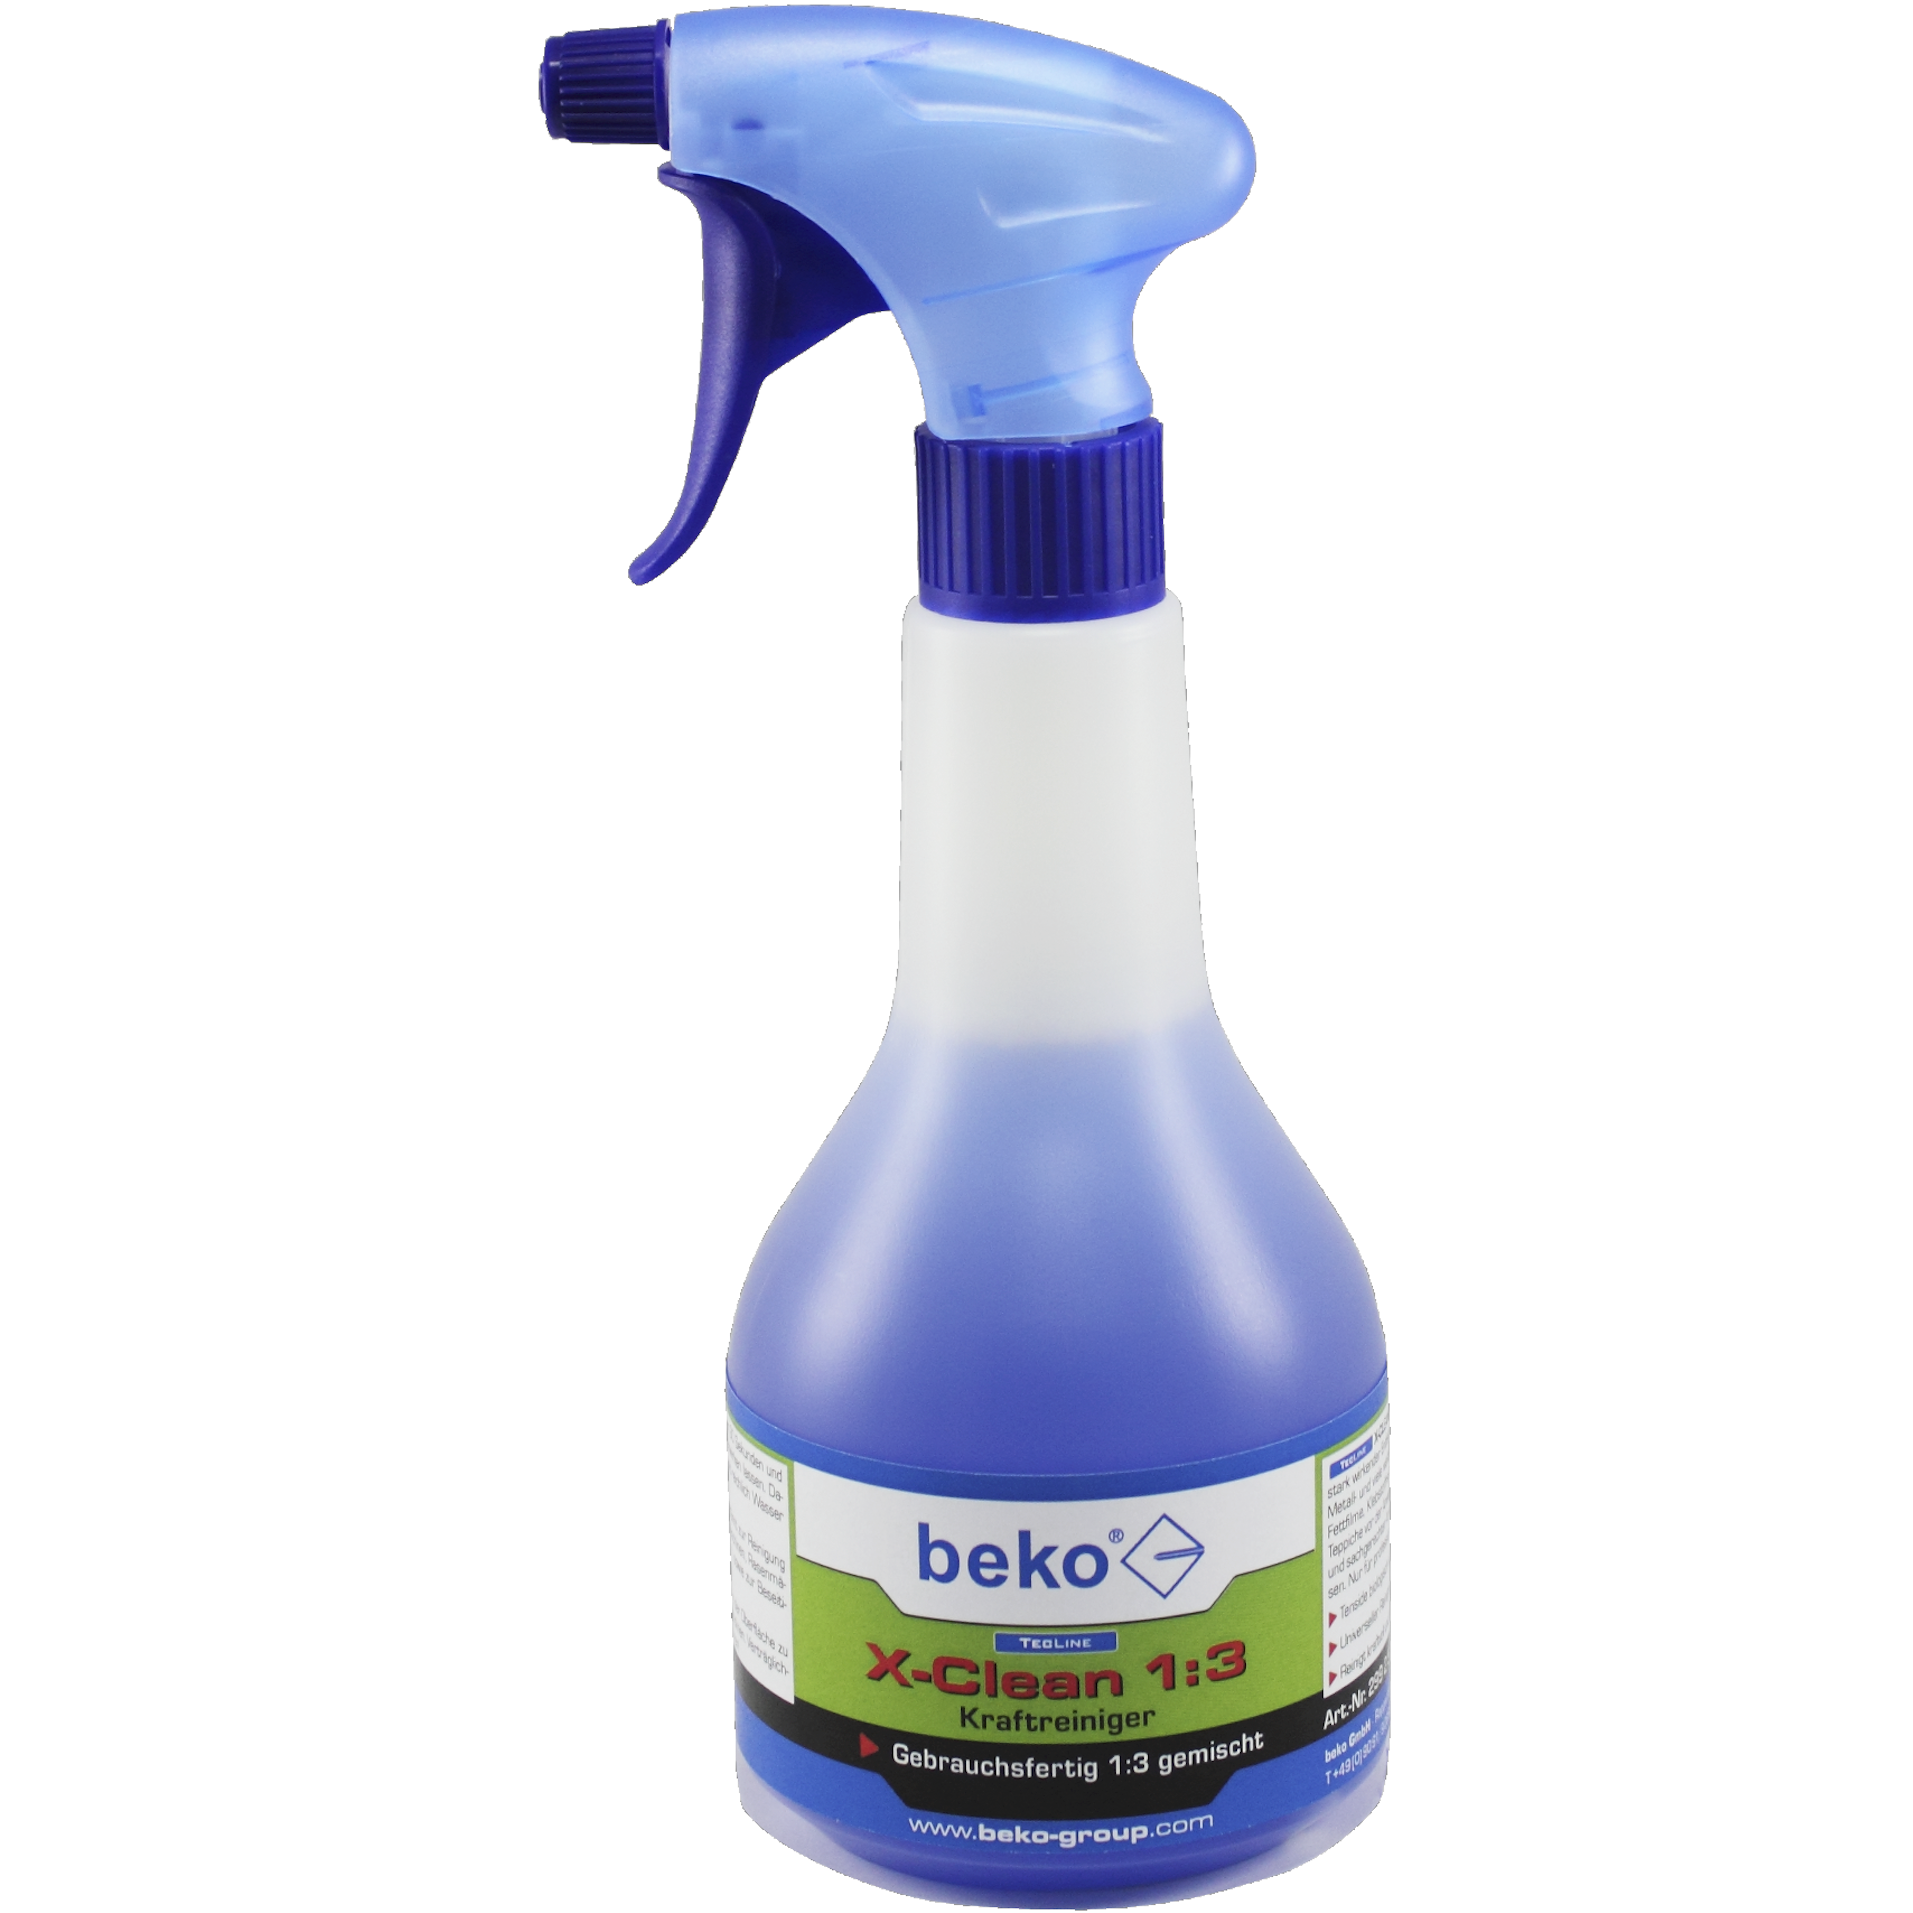 beko® TecLine X-Clean 1:3 Kraftreiniger